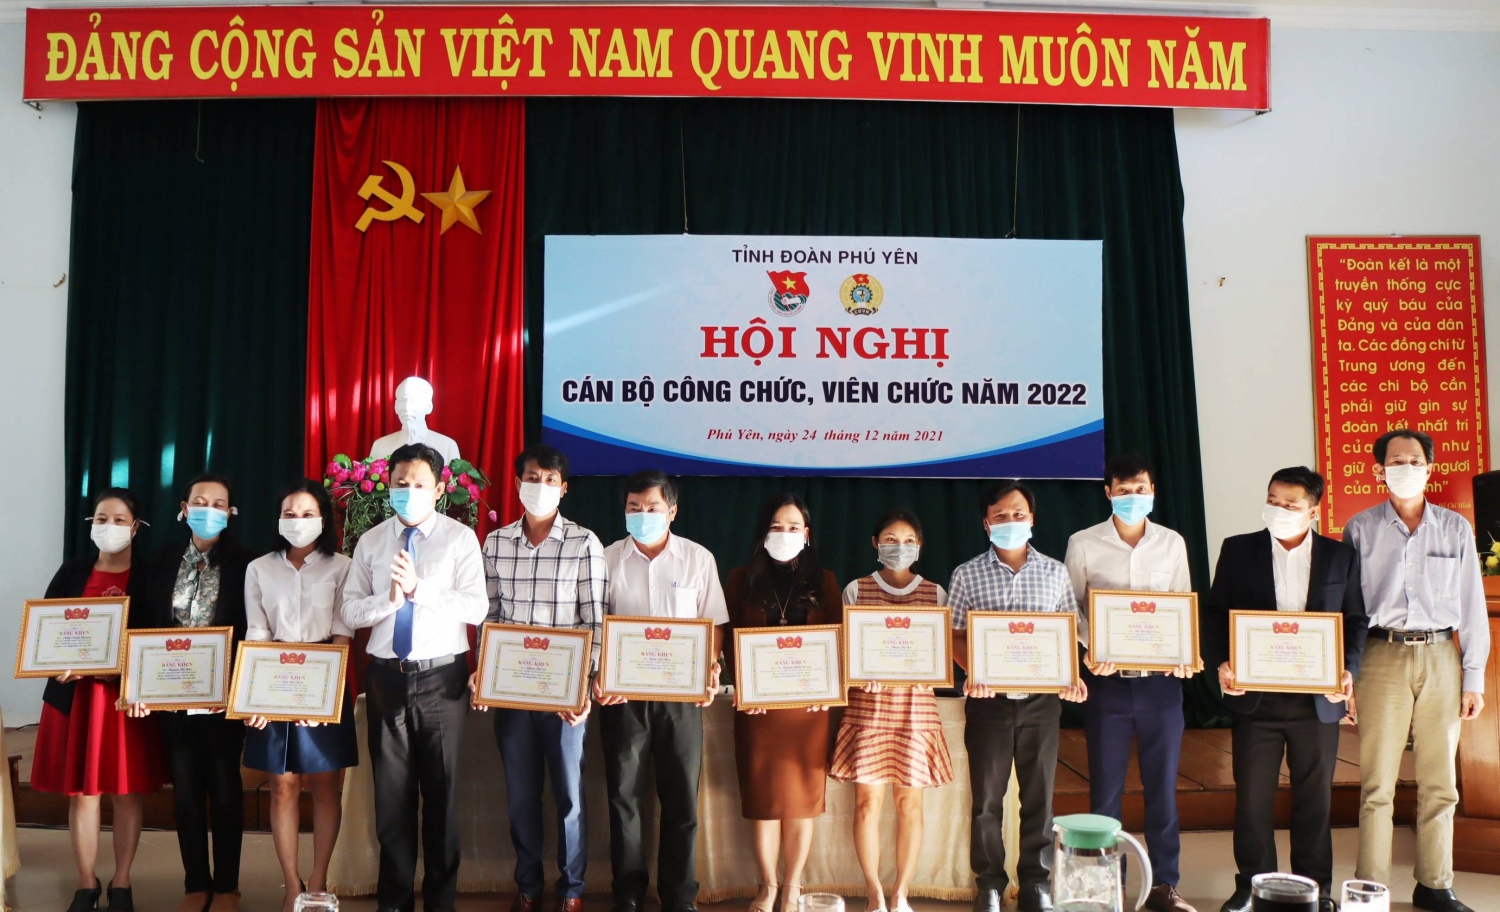 Đ/c Phan Xuân Hạnh - Thủ trưởng cơ quan Tỉnh Đoàn tặng bằng khen cho các cá nhân đã có thành tích trong công tác Đoàn và phong trào thanh thiếu nhi năm 2021.